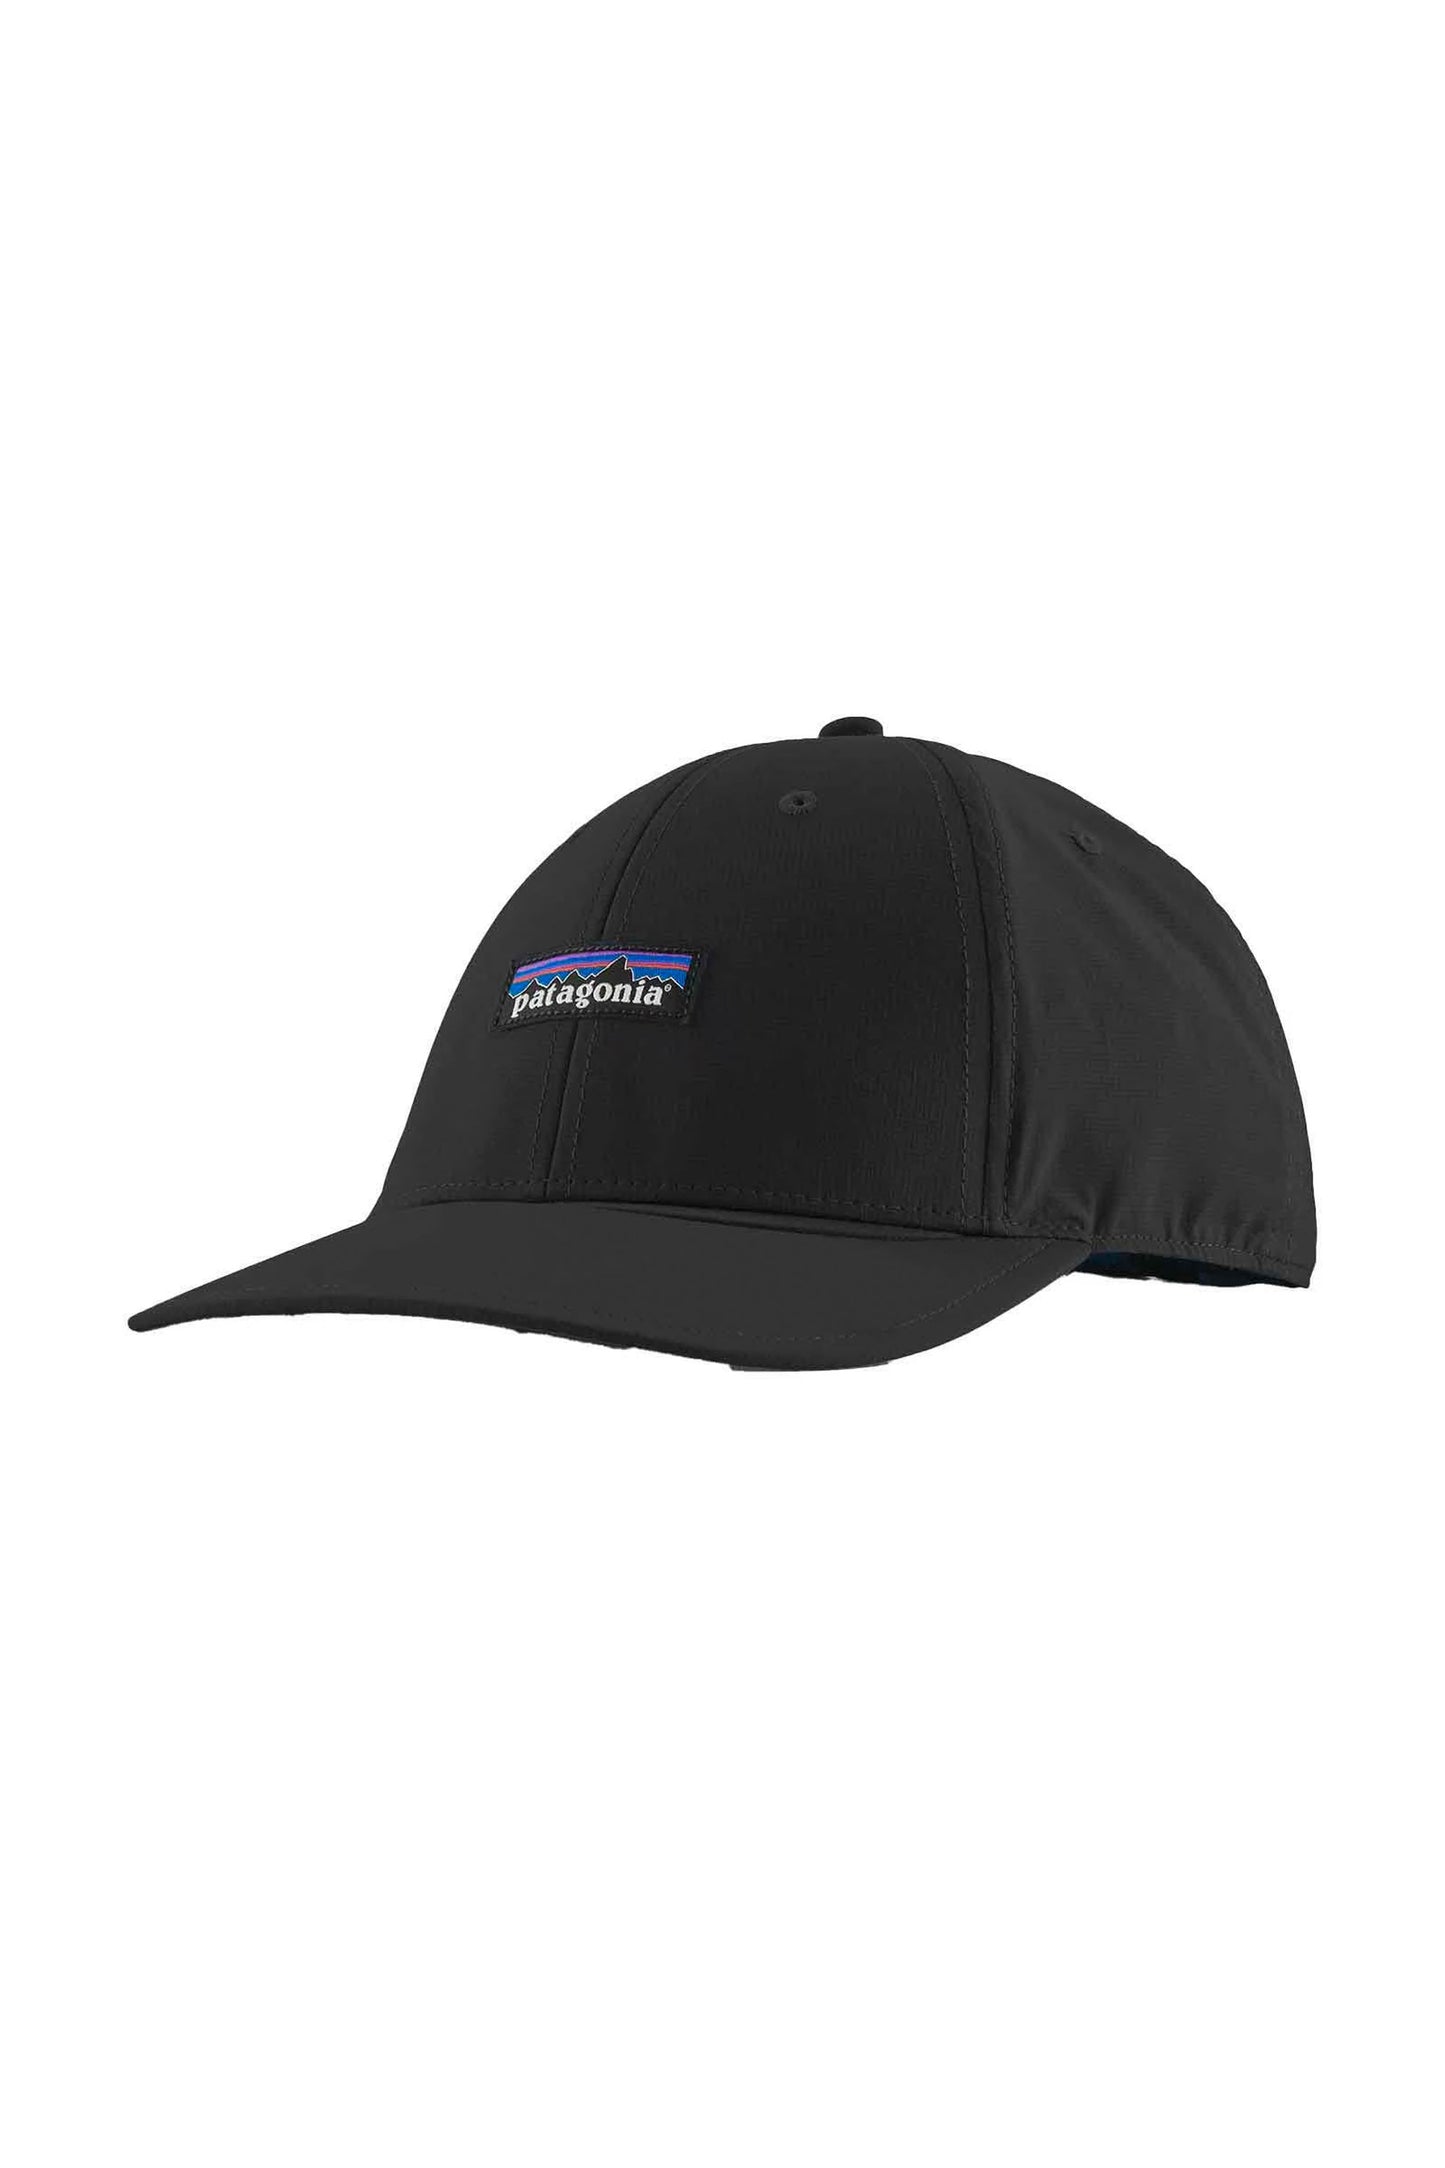 Pukas-Surf-Shop-patagonia-trucker-hat-airshed-cap-black